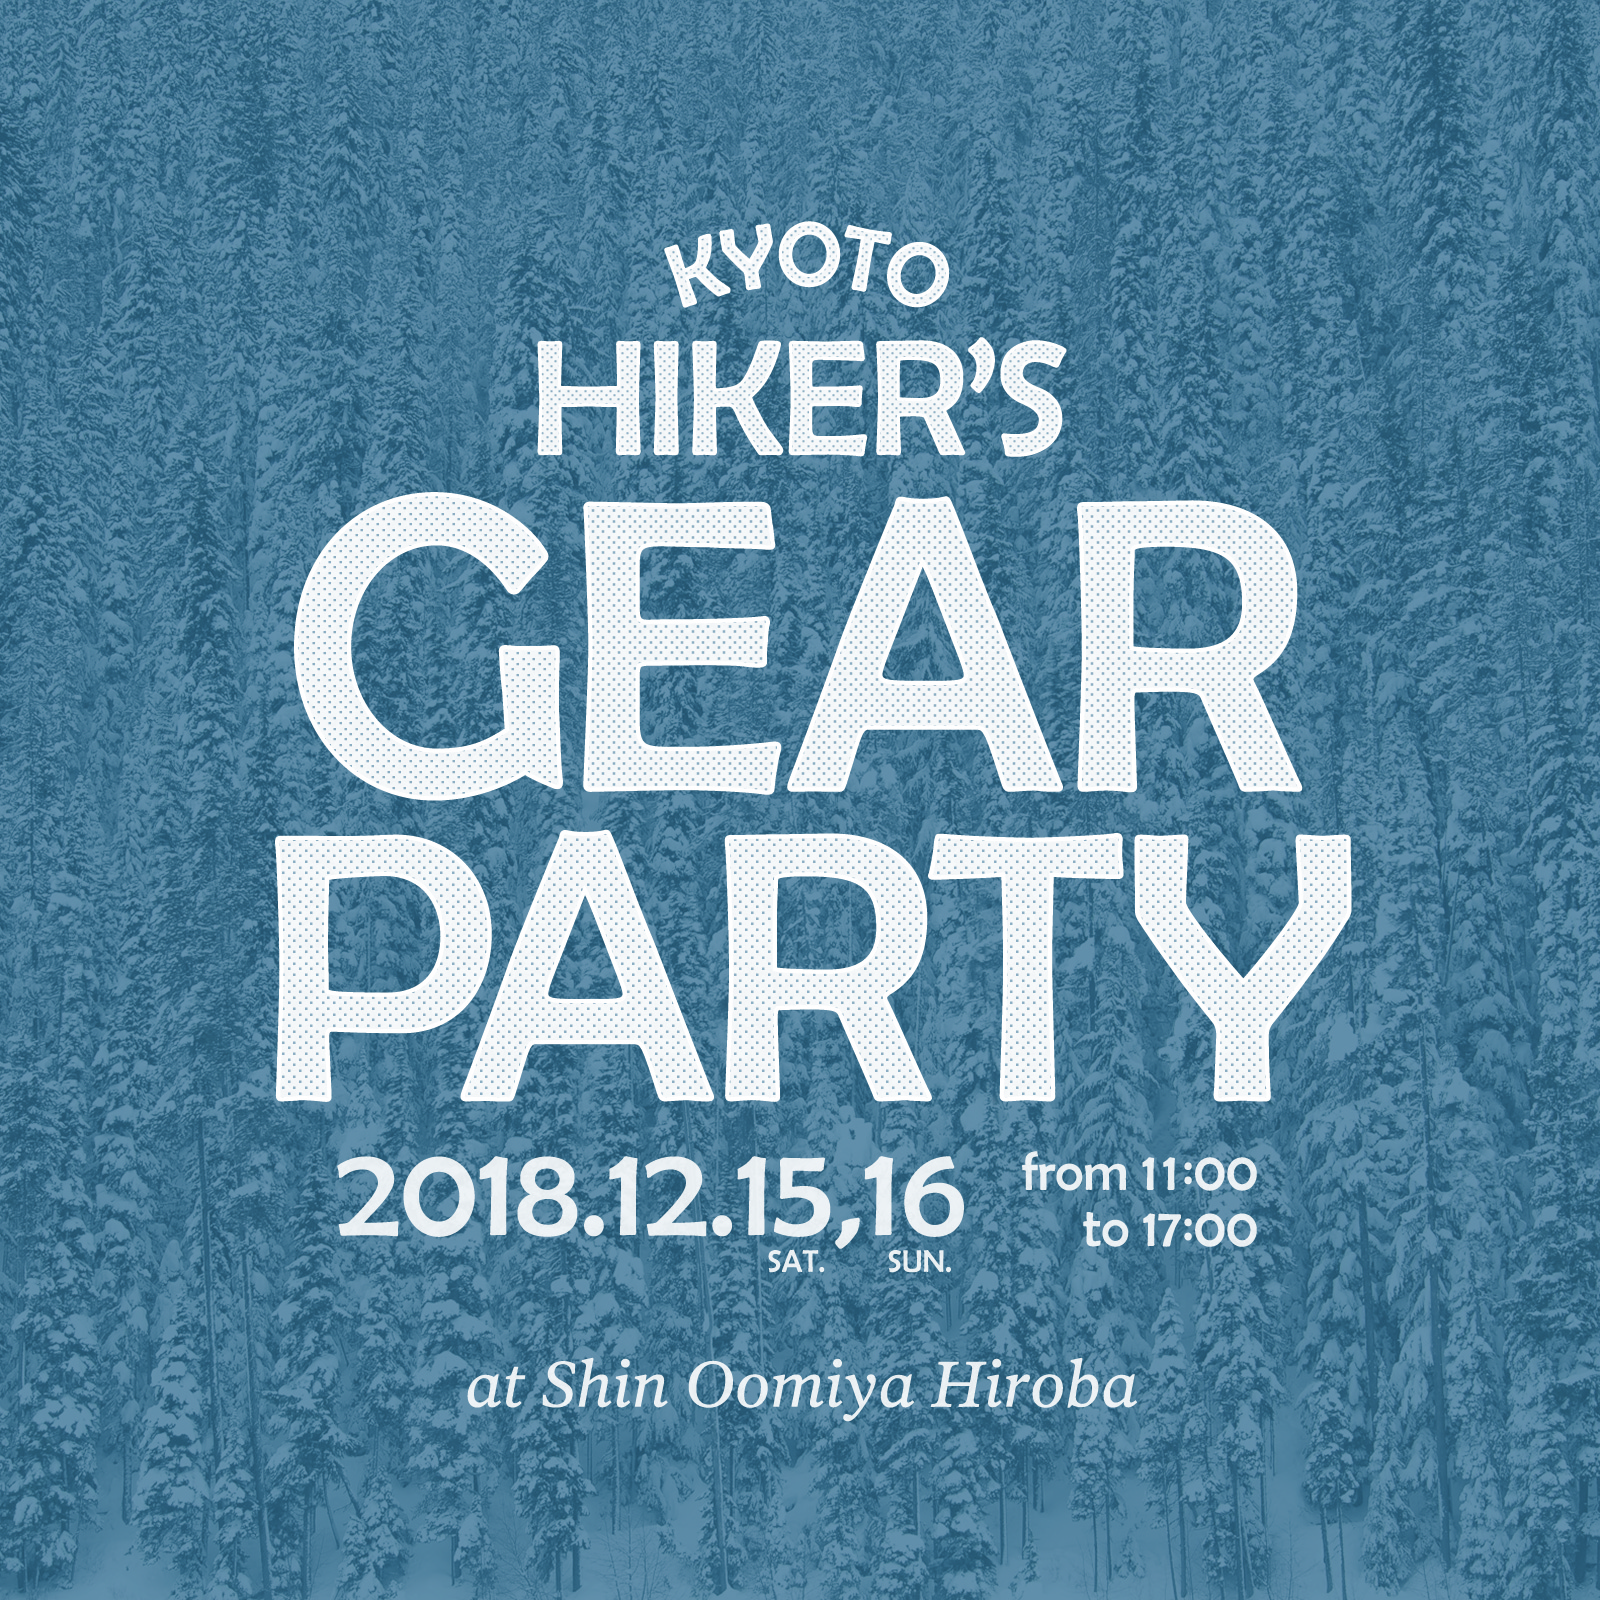 イベント "KYOTO HIKER'S GEAR PARTY" に参加致します。